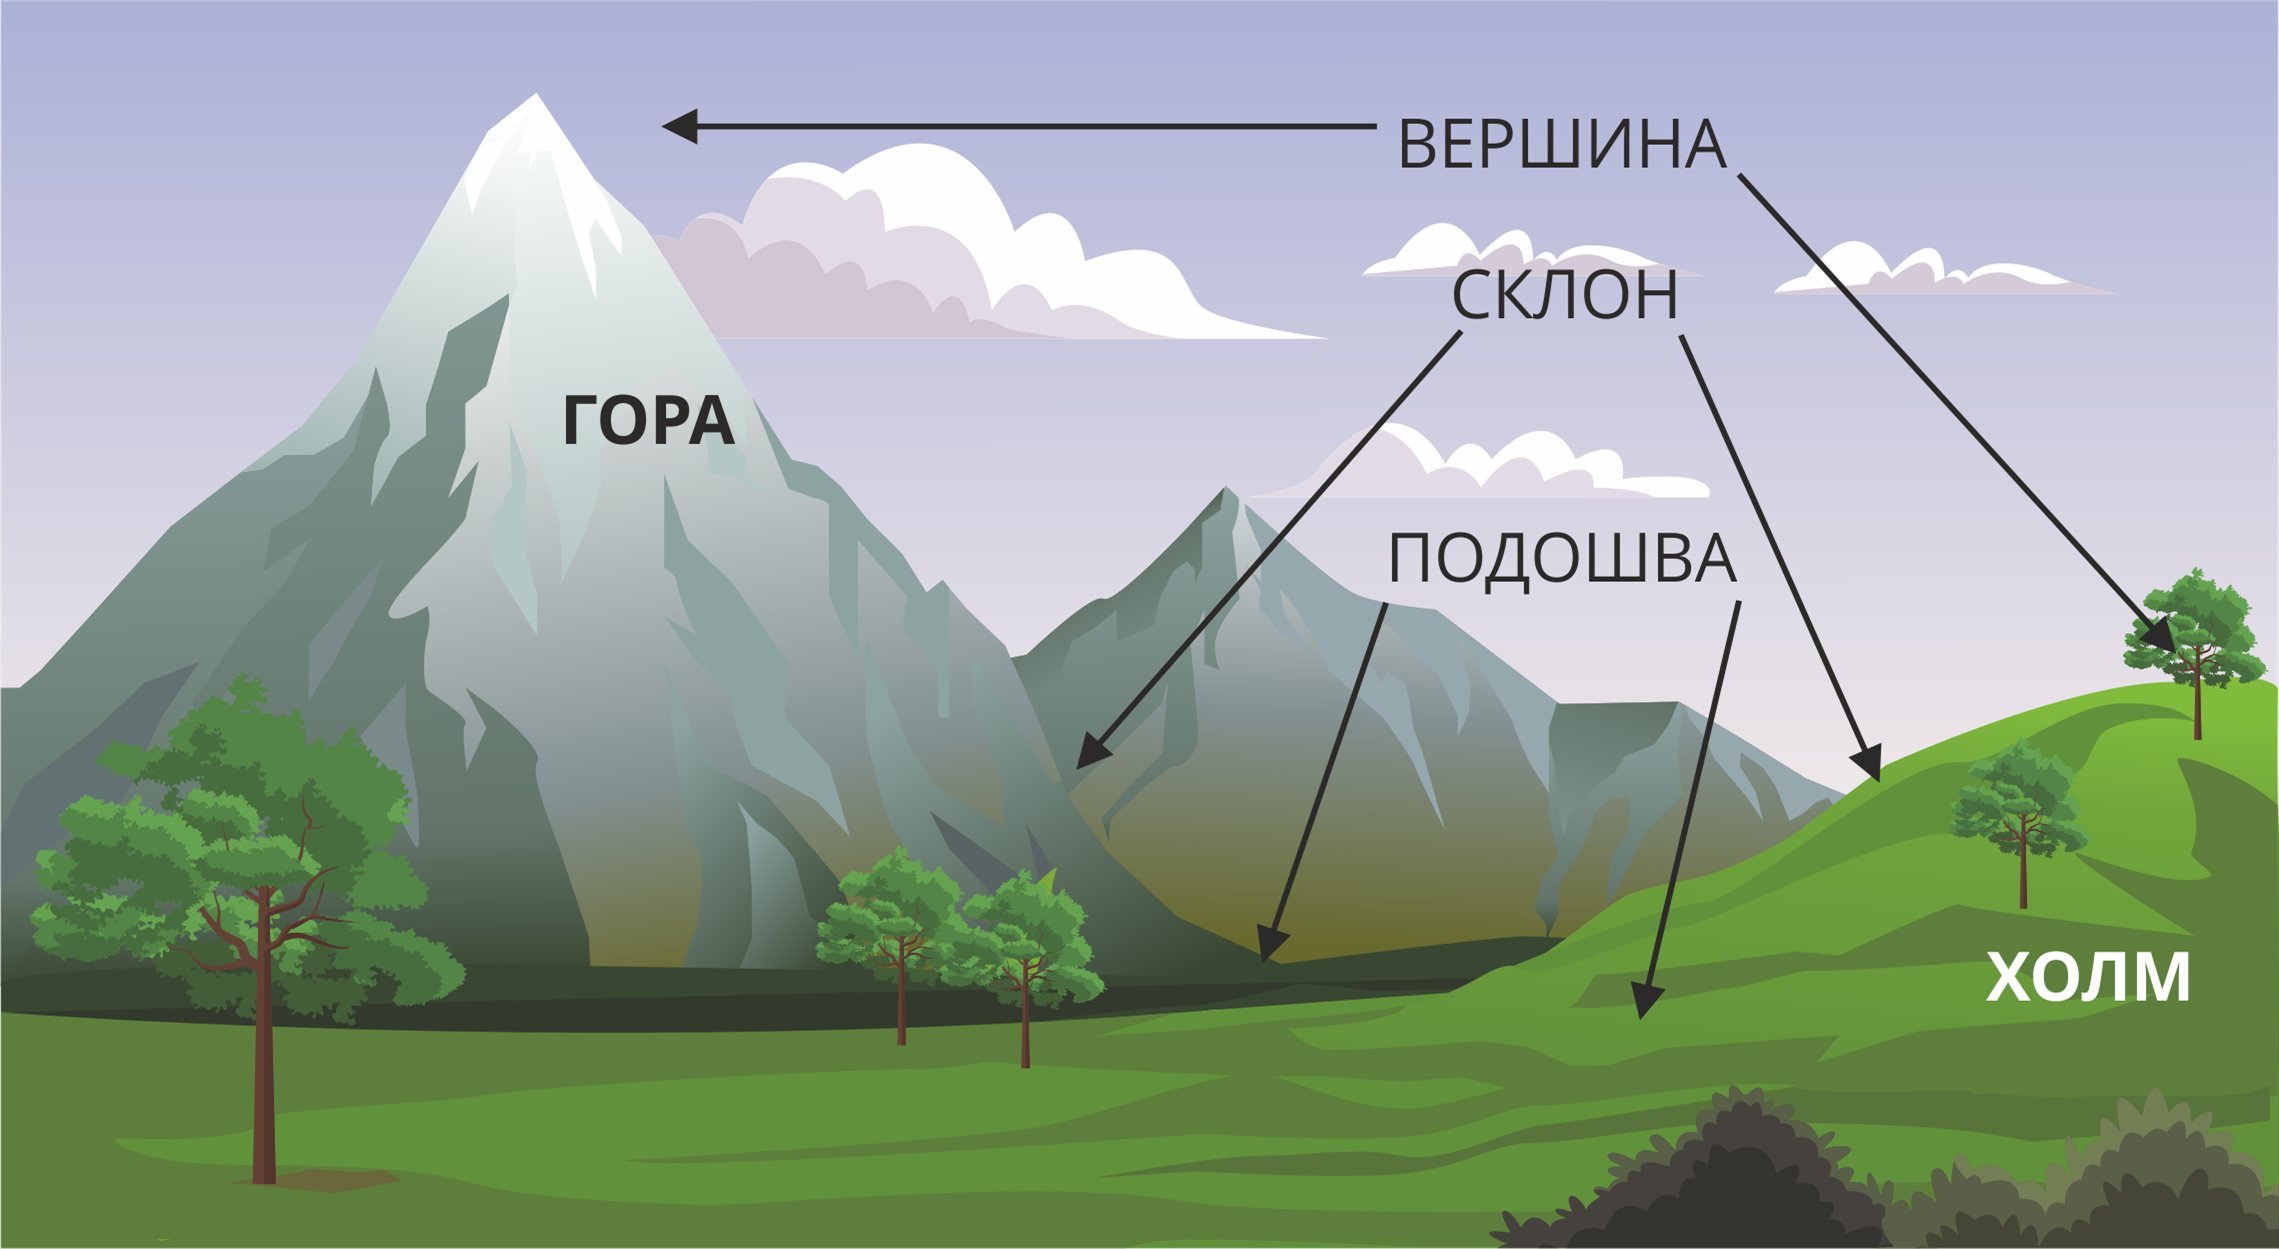 4 части холма. Строение гор. Название частей горы. Строение горы. Строение горы и холма.